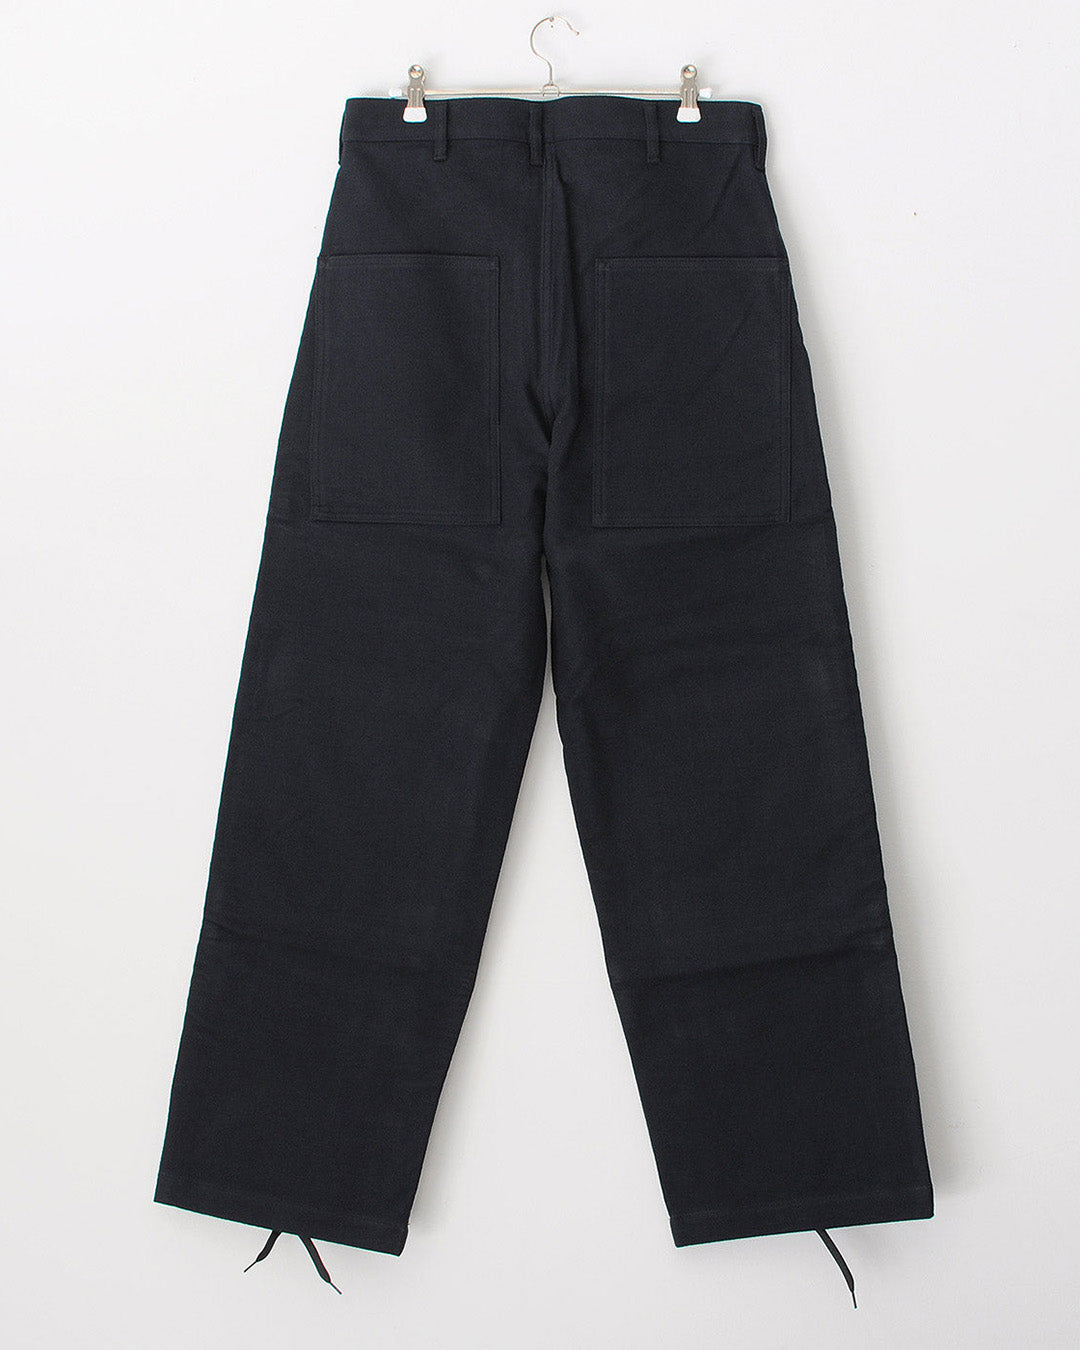 TUKI double knee pants / navy blue / cotton melton / size1,2